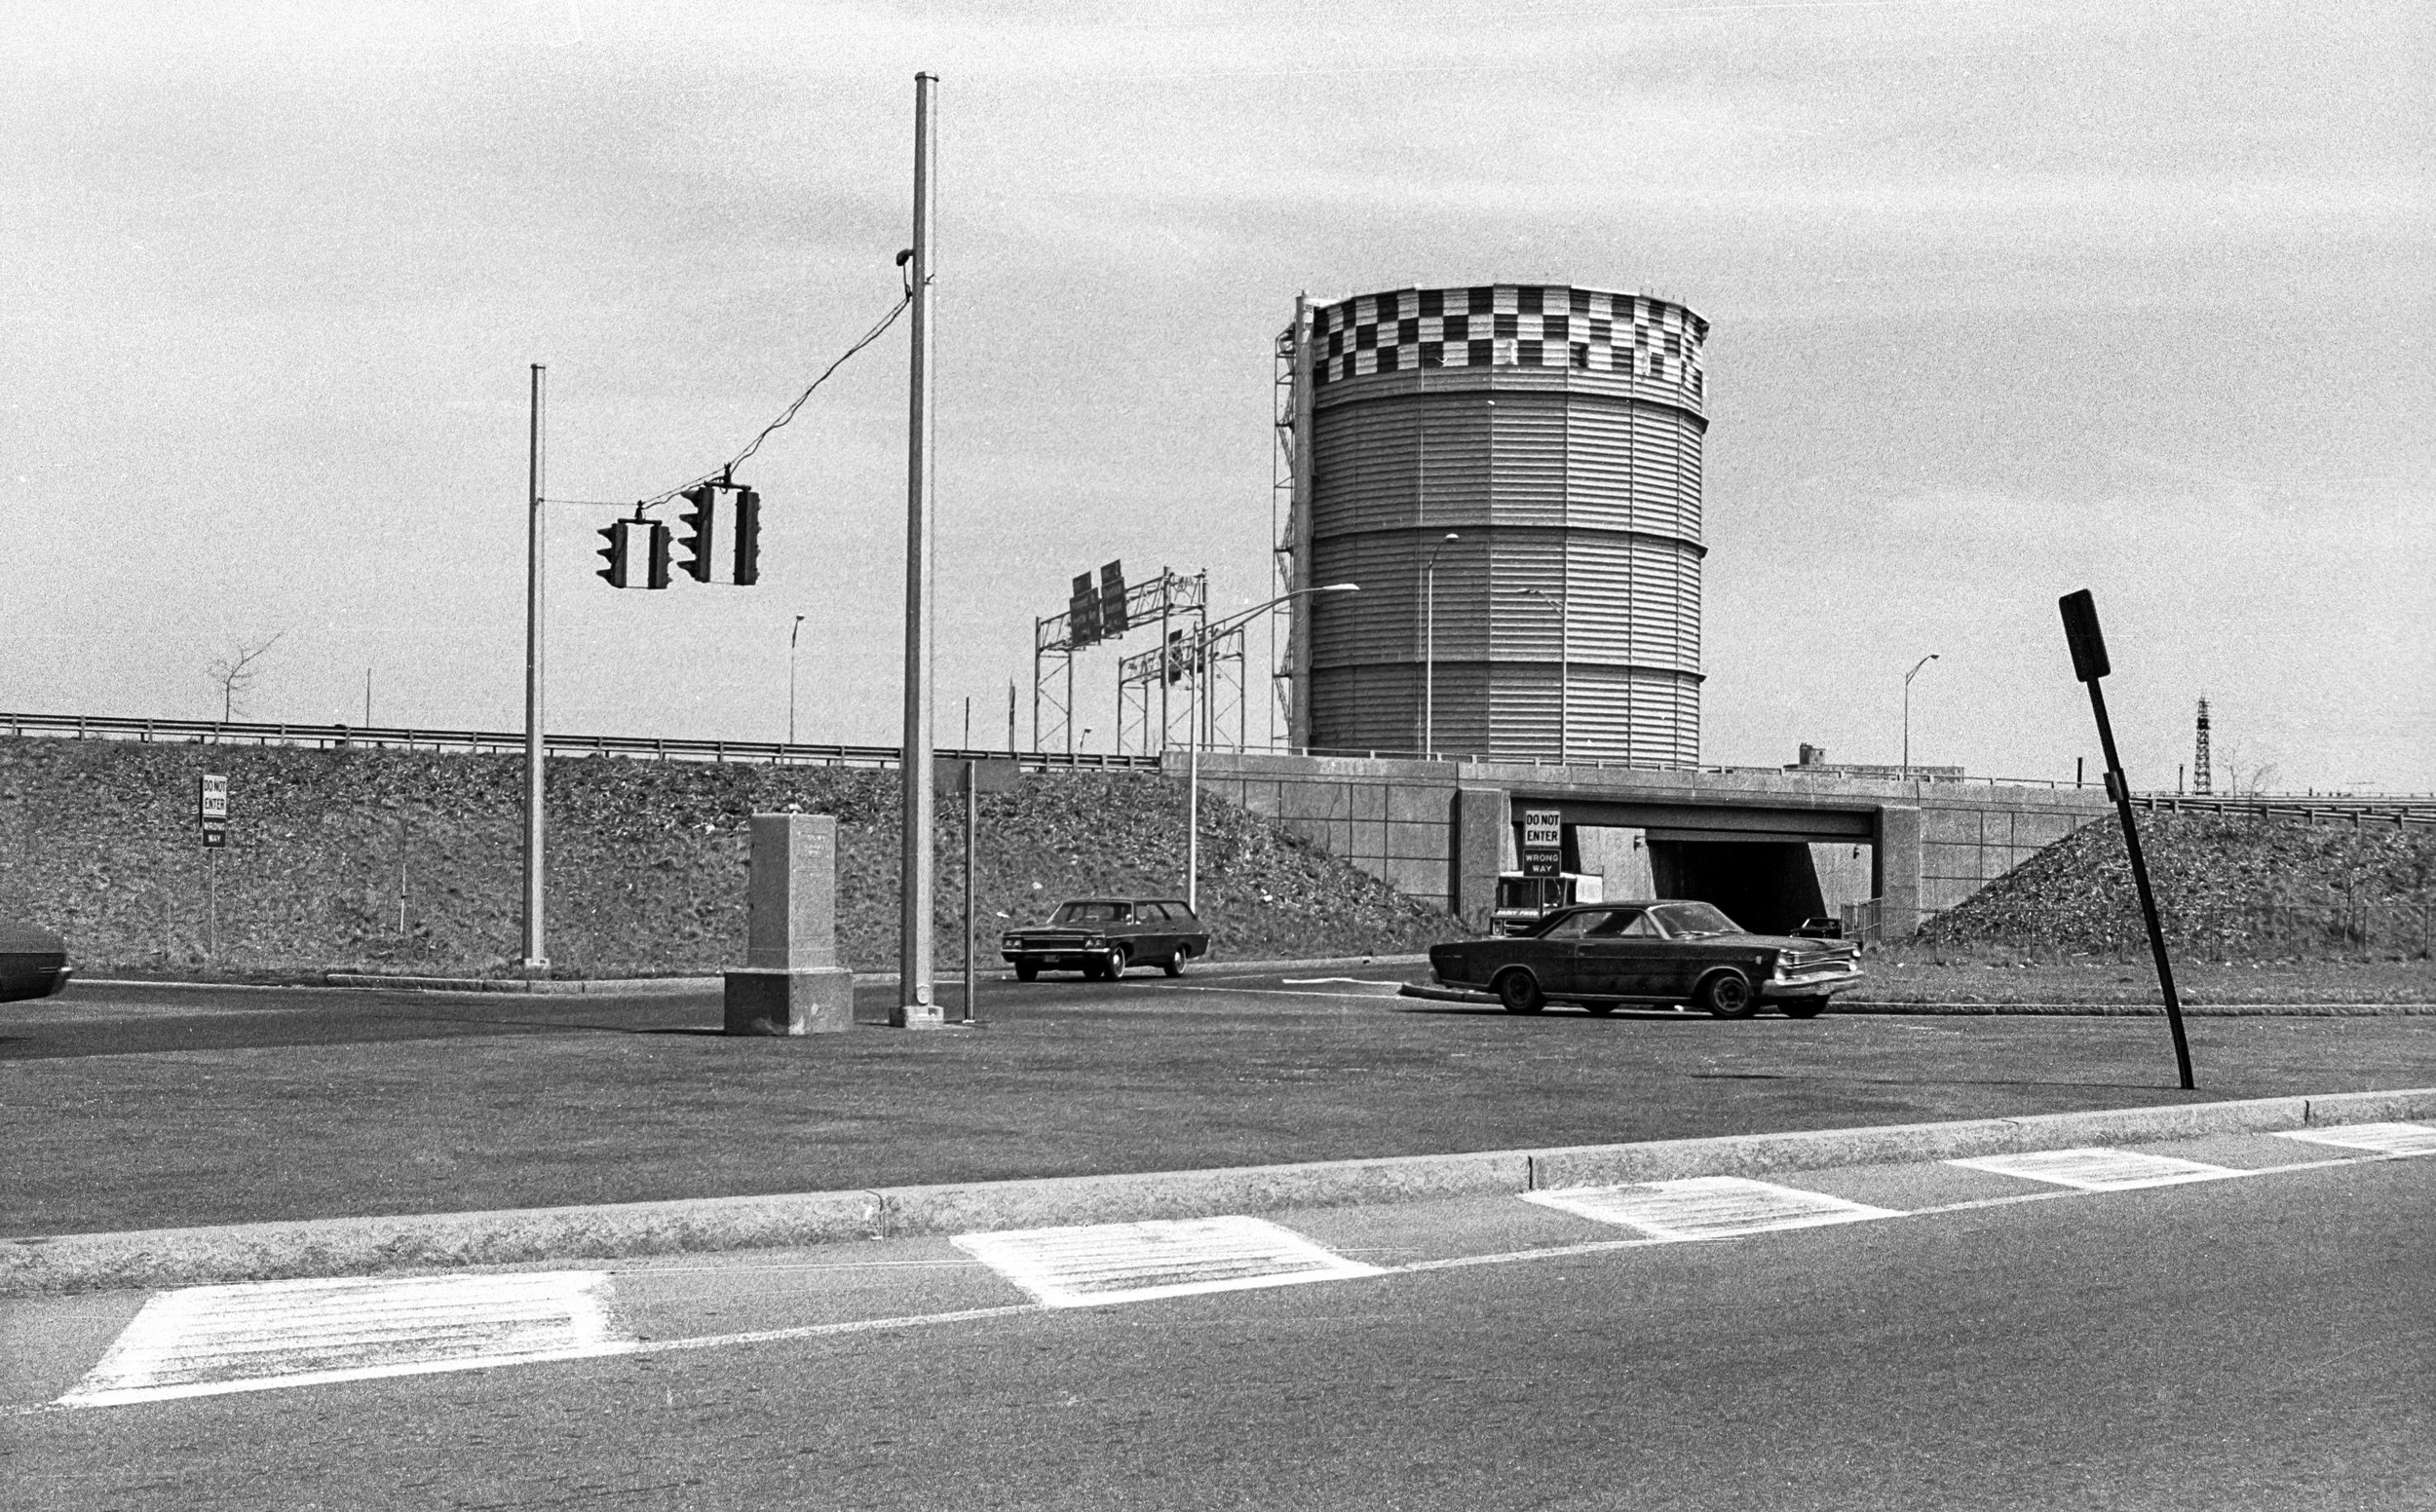   Bridgeport, CT, 1973  